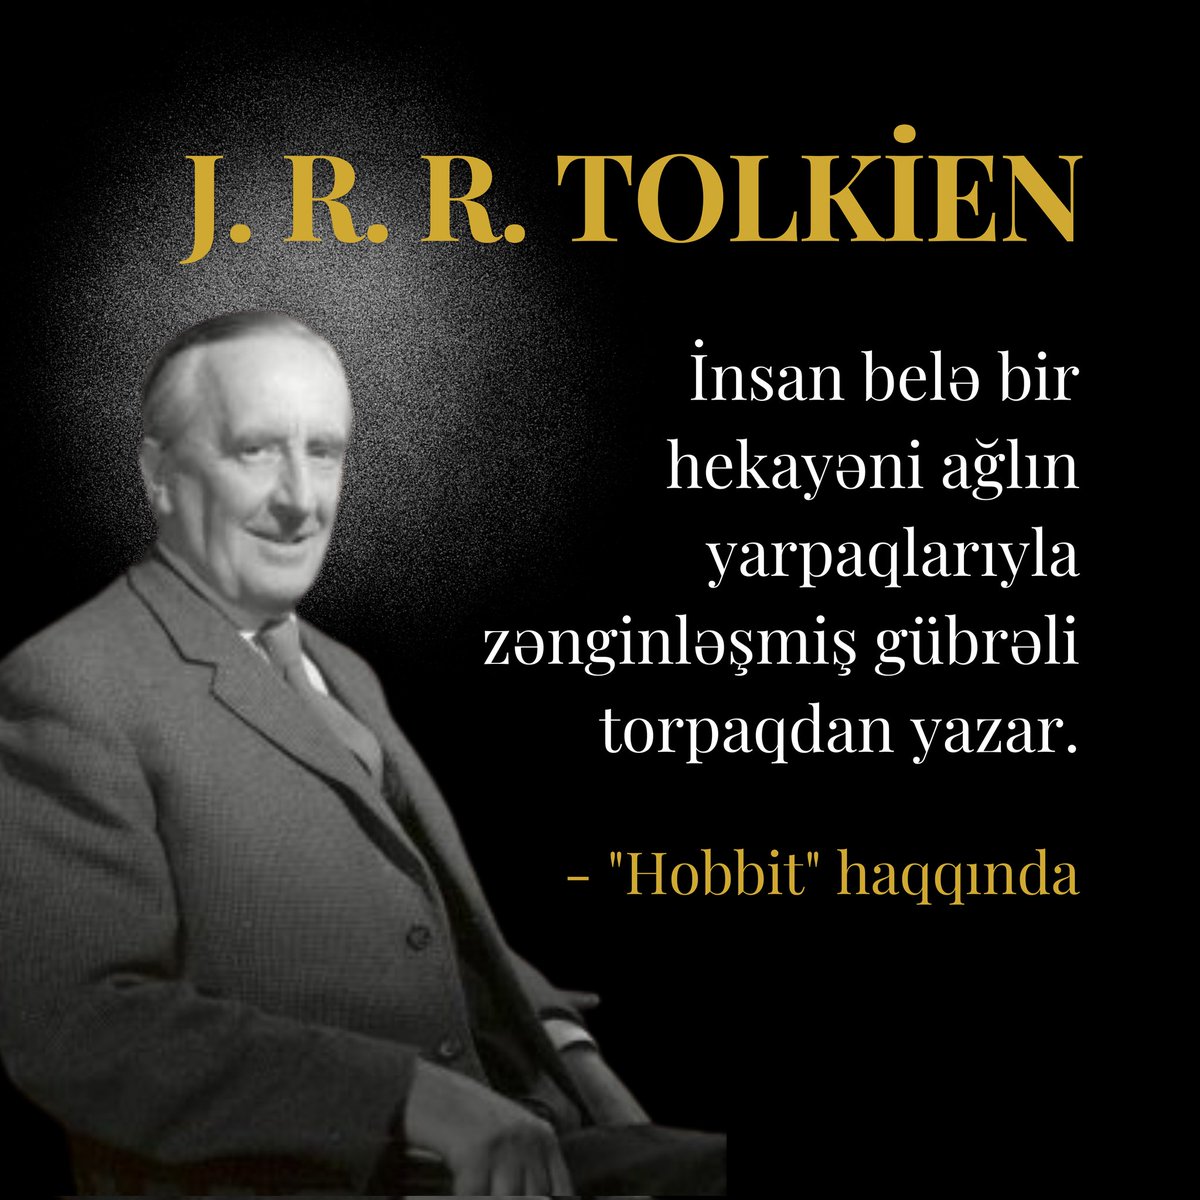 'İnsan belə bir hekayəni ağlın yarpaqlarıyla zənginləşmiş gübrəli torpaqdan yazar.'
- J. R. R. Tolkien ('Hobbit ' haqqında)

#Tolkien #jrrtolkien #hobbit